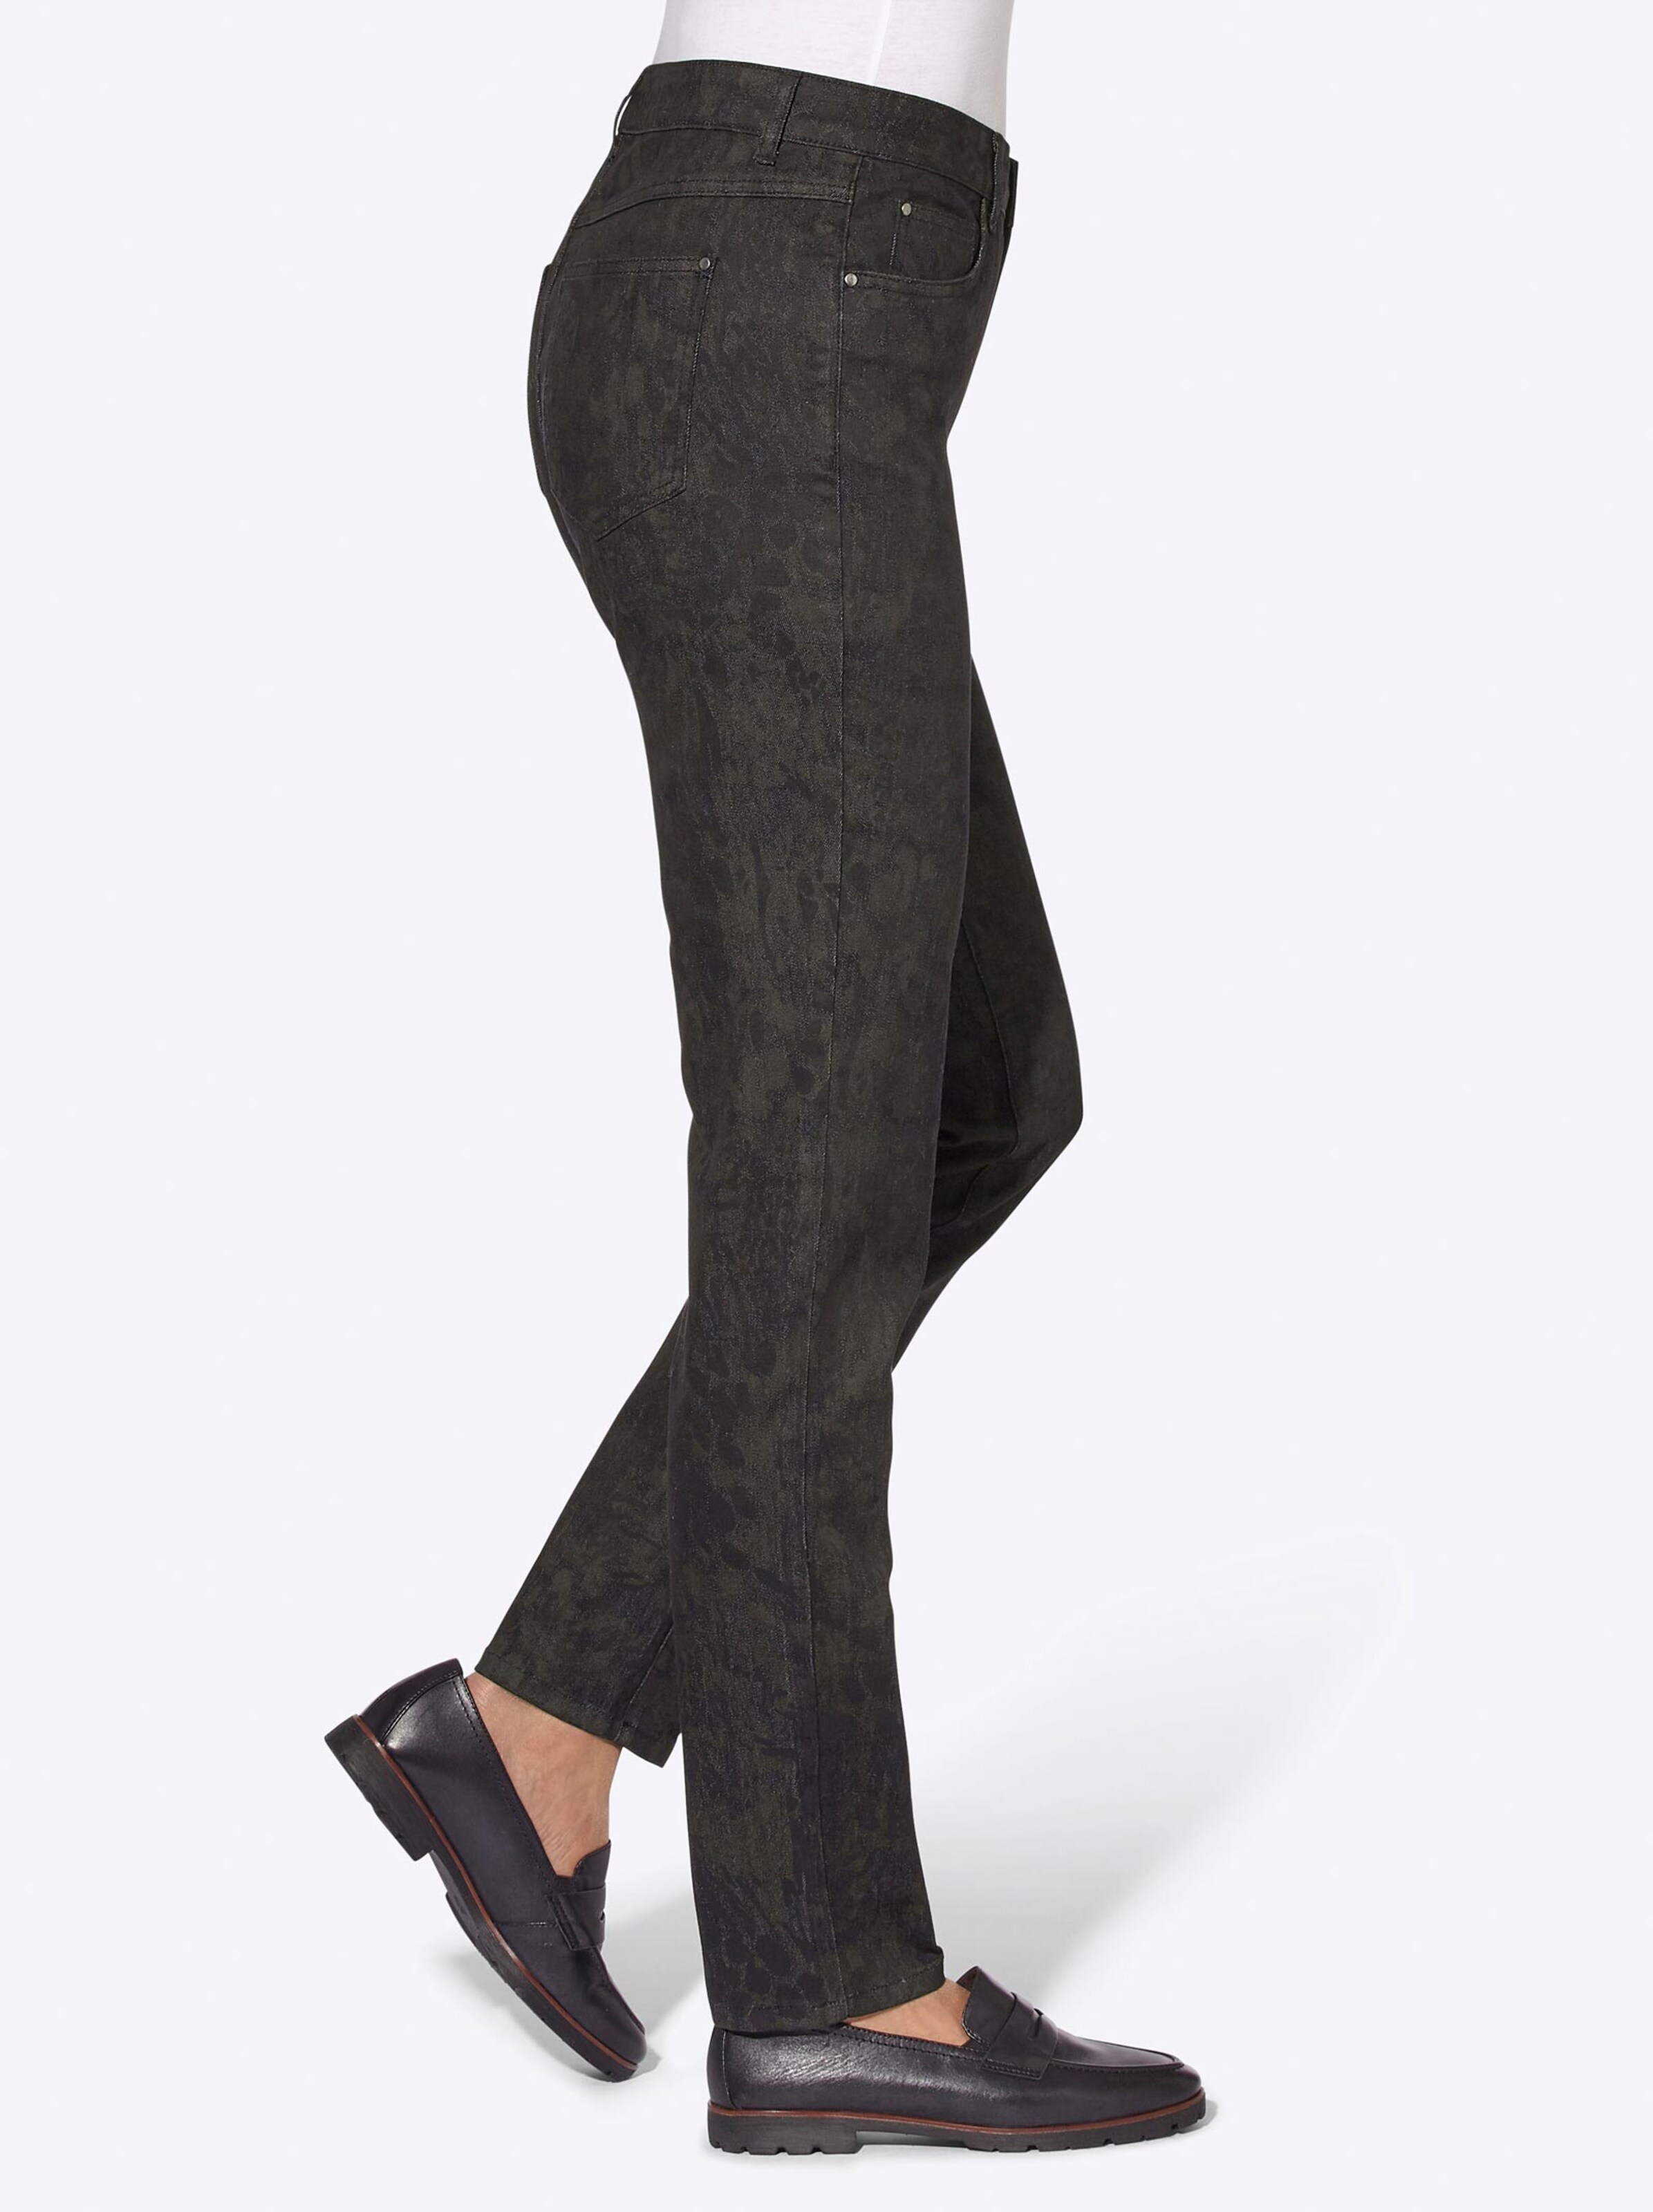 Damenmode Jeans 5-Pocket-Jeans in anthrazit-schwarz-bedruckt 